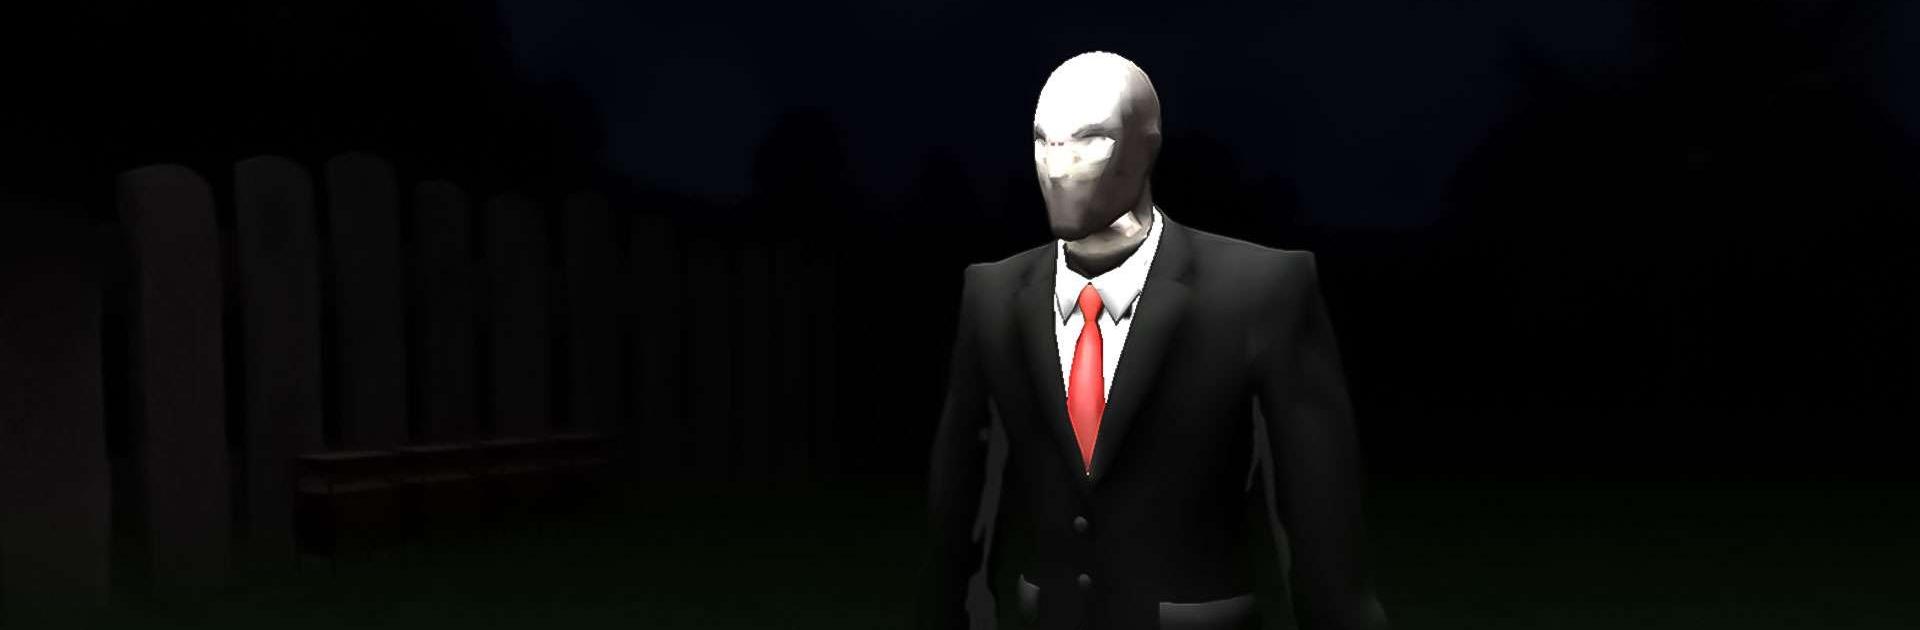 Scary Slender man 3D : Horror